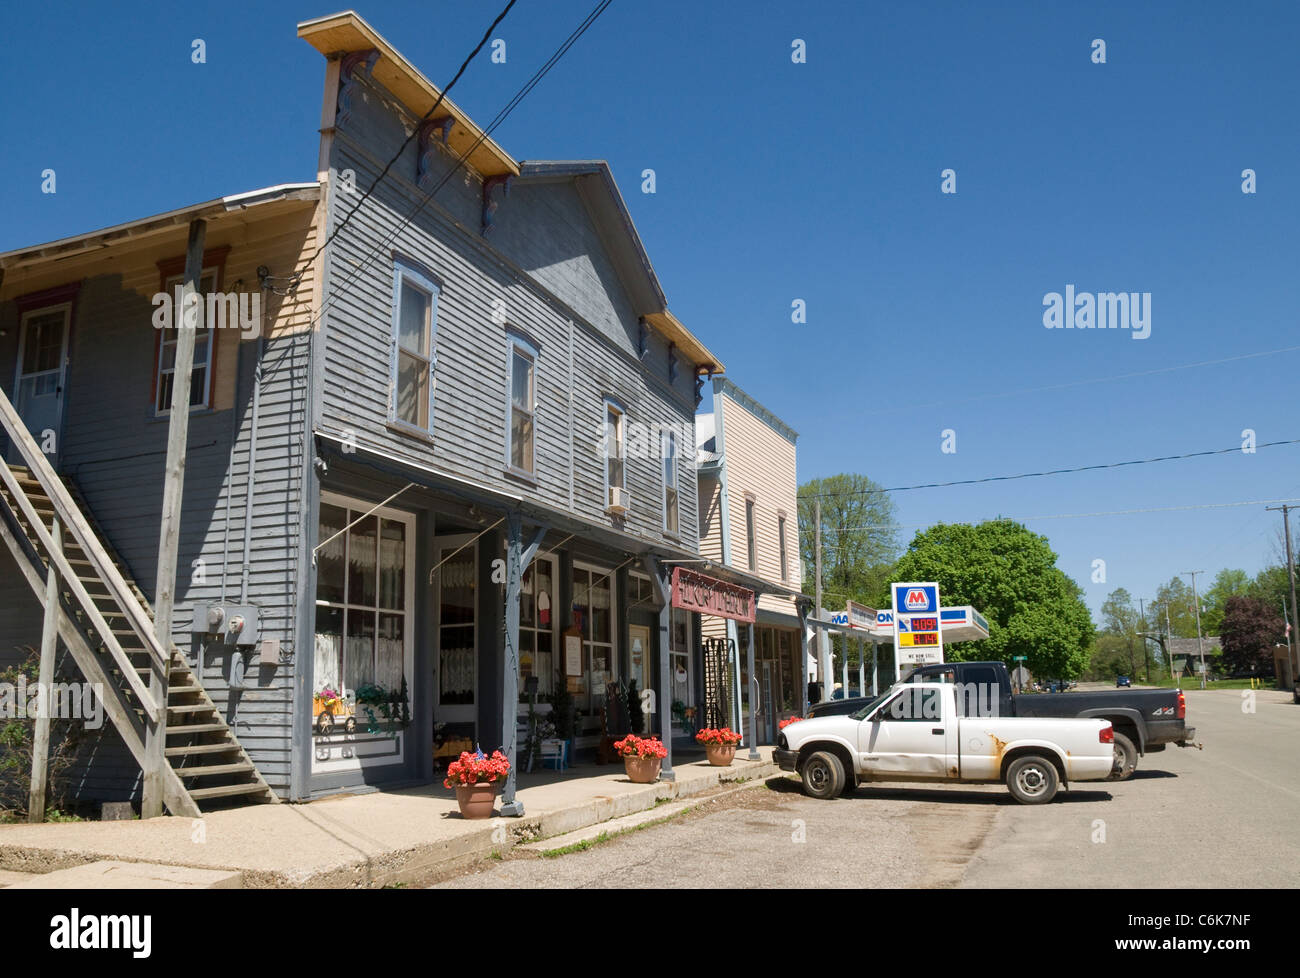 Tiendas en la calle principal, pequeña ciudad, Hickory Corners Michigan EE.UU. Foto de stock